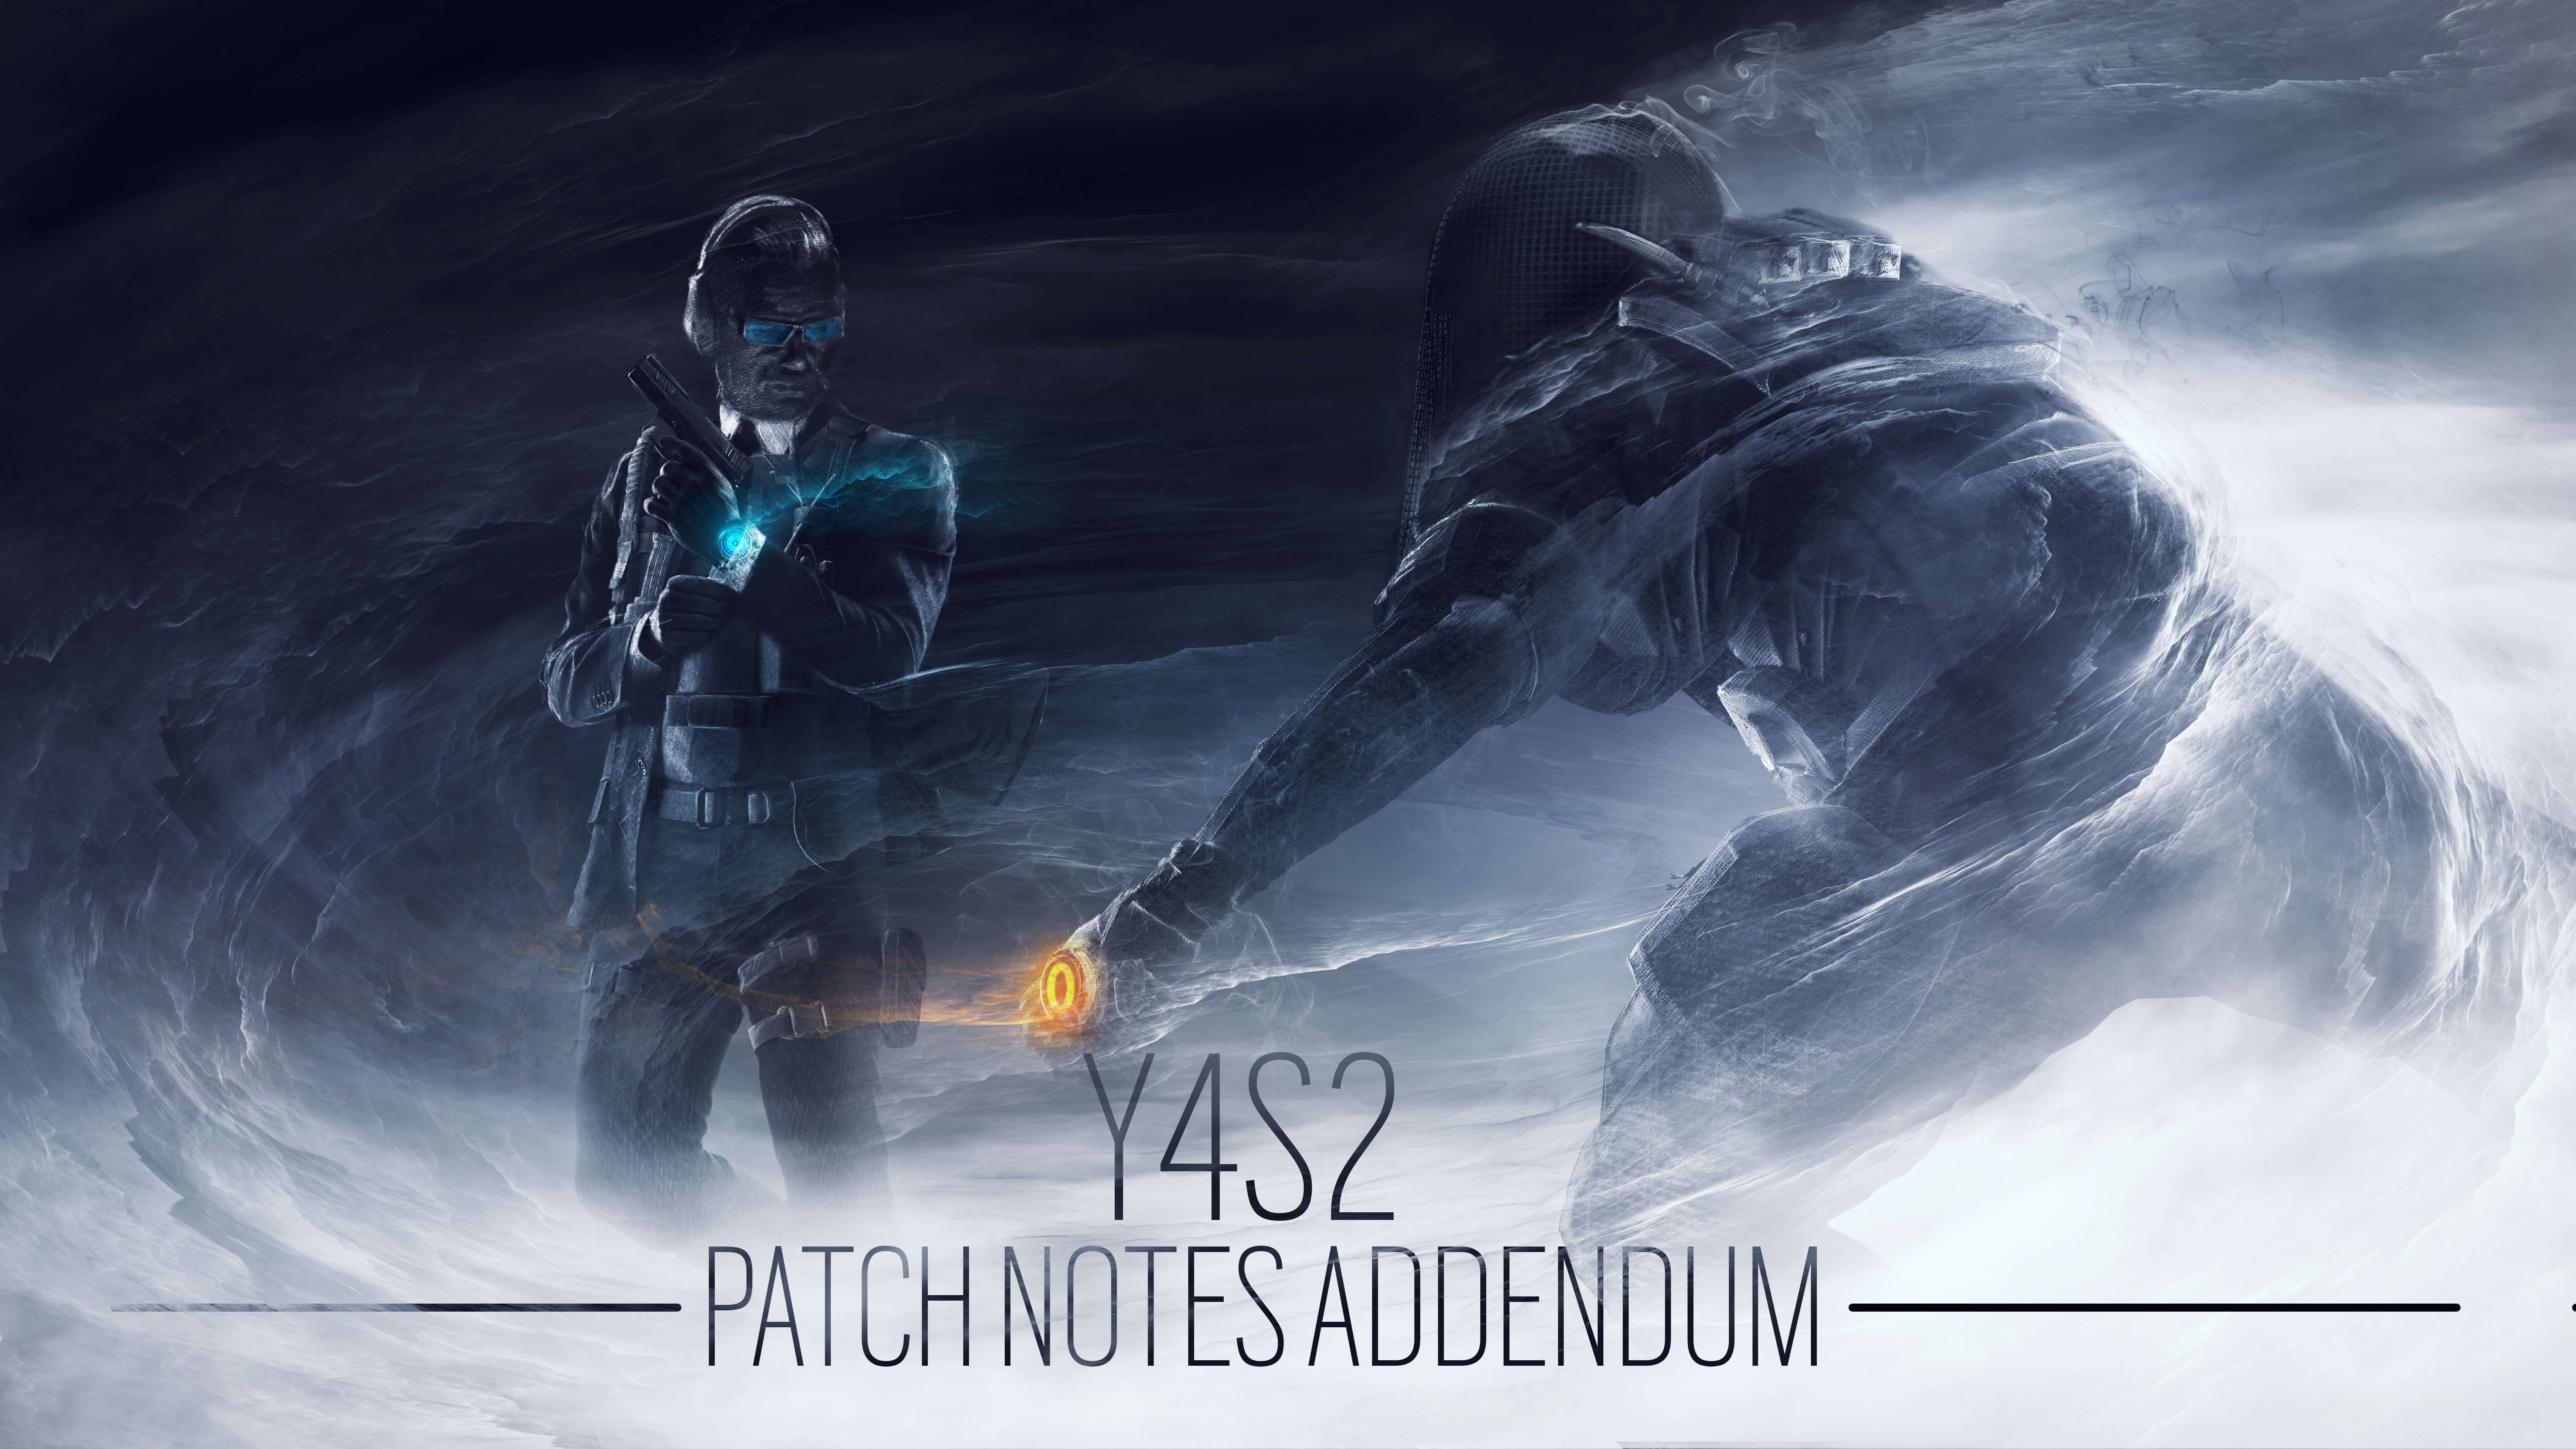 Y4S2 Patch Notes Addendum. Rainbow Six® Siege Game News & Updates